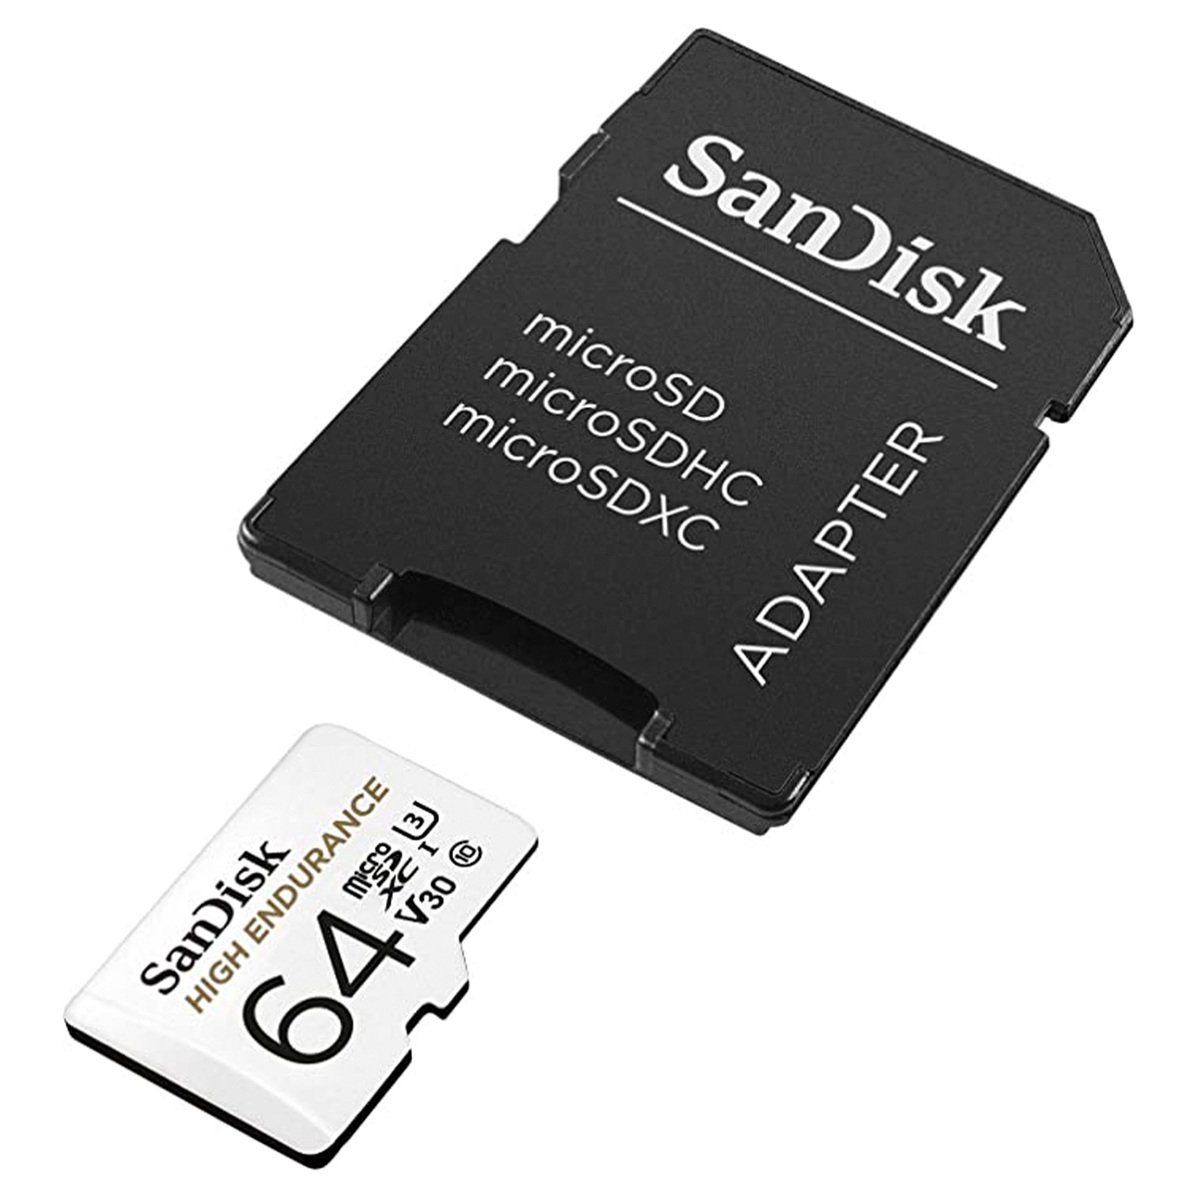 بطاقة ذاكرة مايكرو اس دي اتش سي عالية التحمل من سانديسك مع محول لكاميرا لوحة القيادة وأنظمة المراقبة المنزلية 64 جيجا بايت